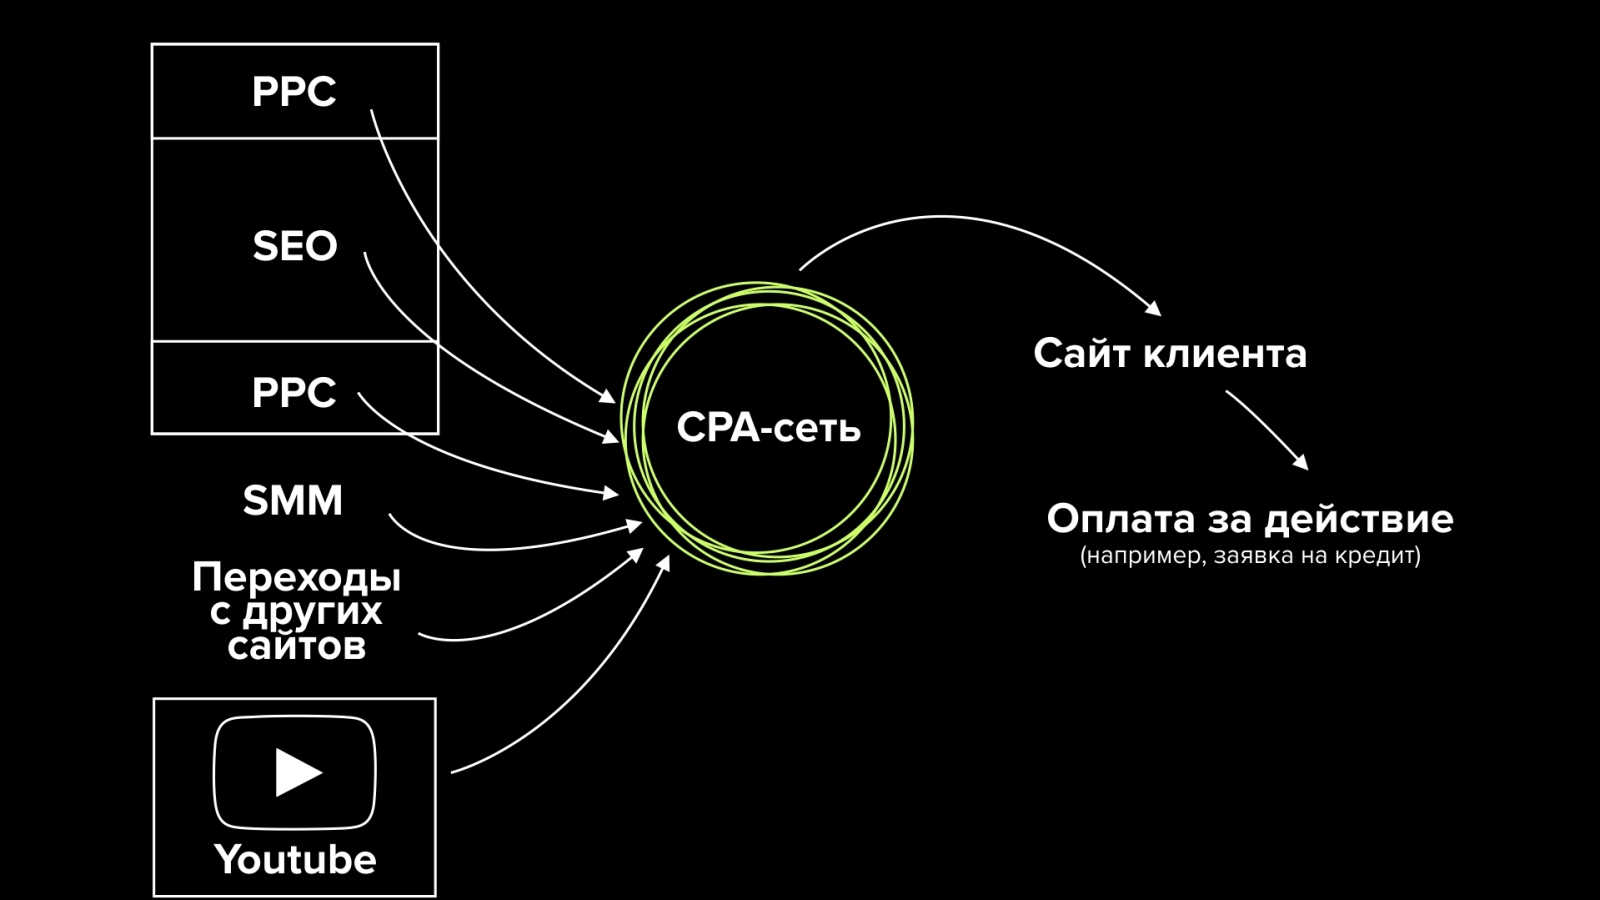 CPA (cost per action) — модель взаимодействия рекламодателя и веб-мастера через интернет-платформу